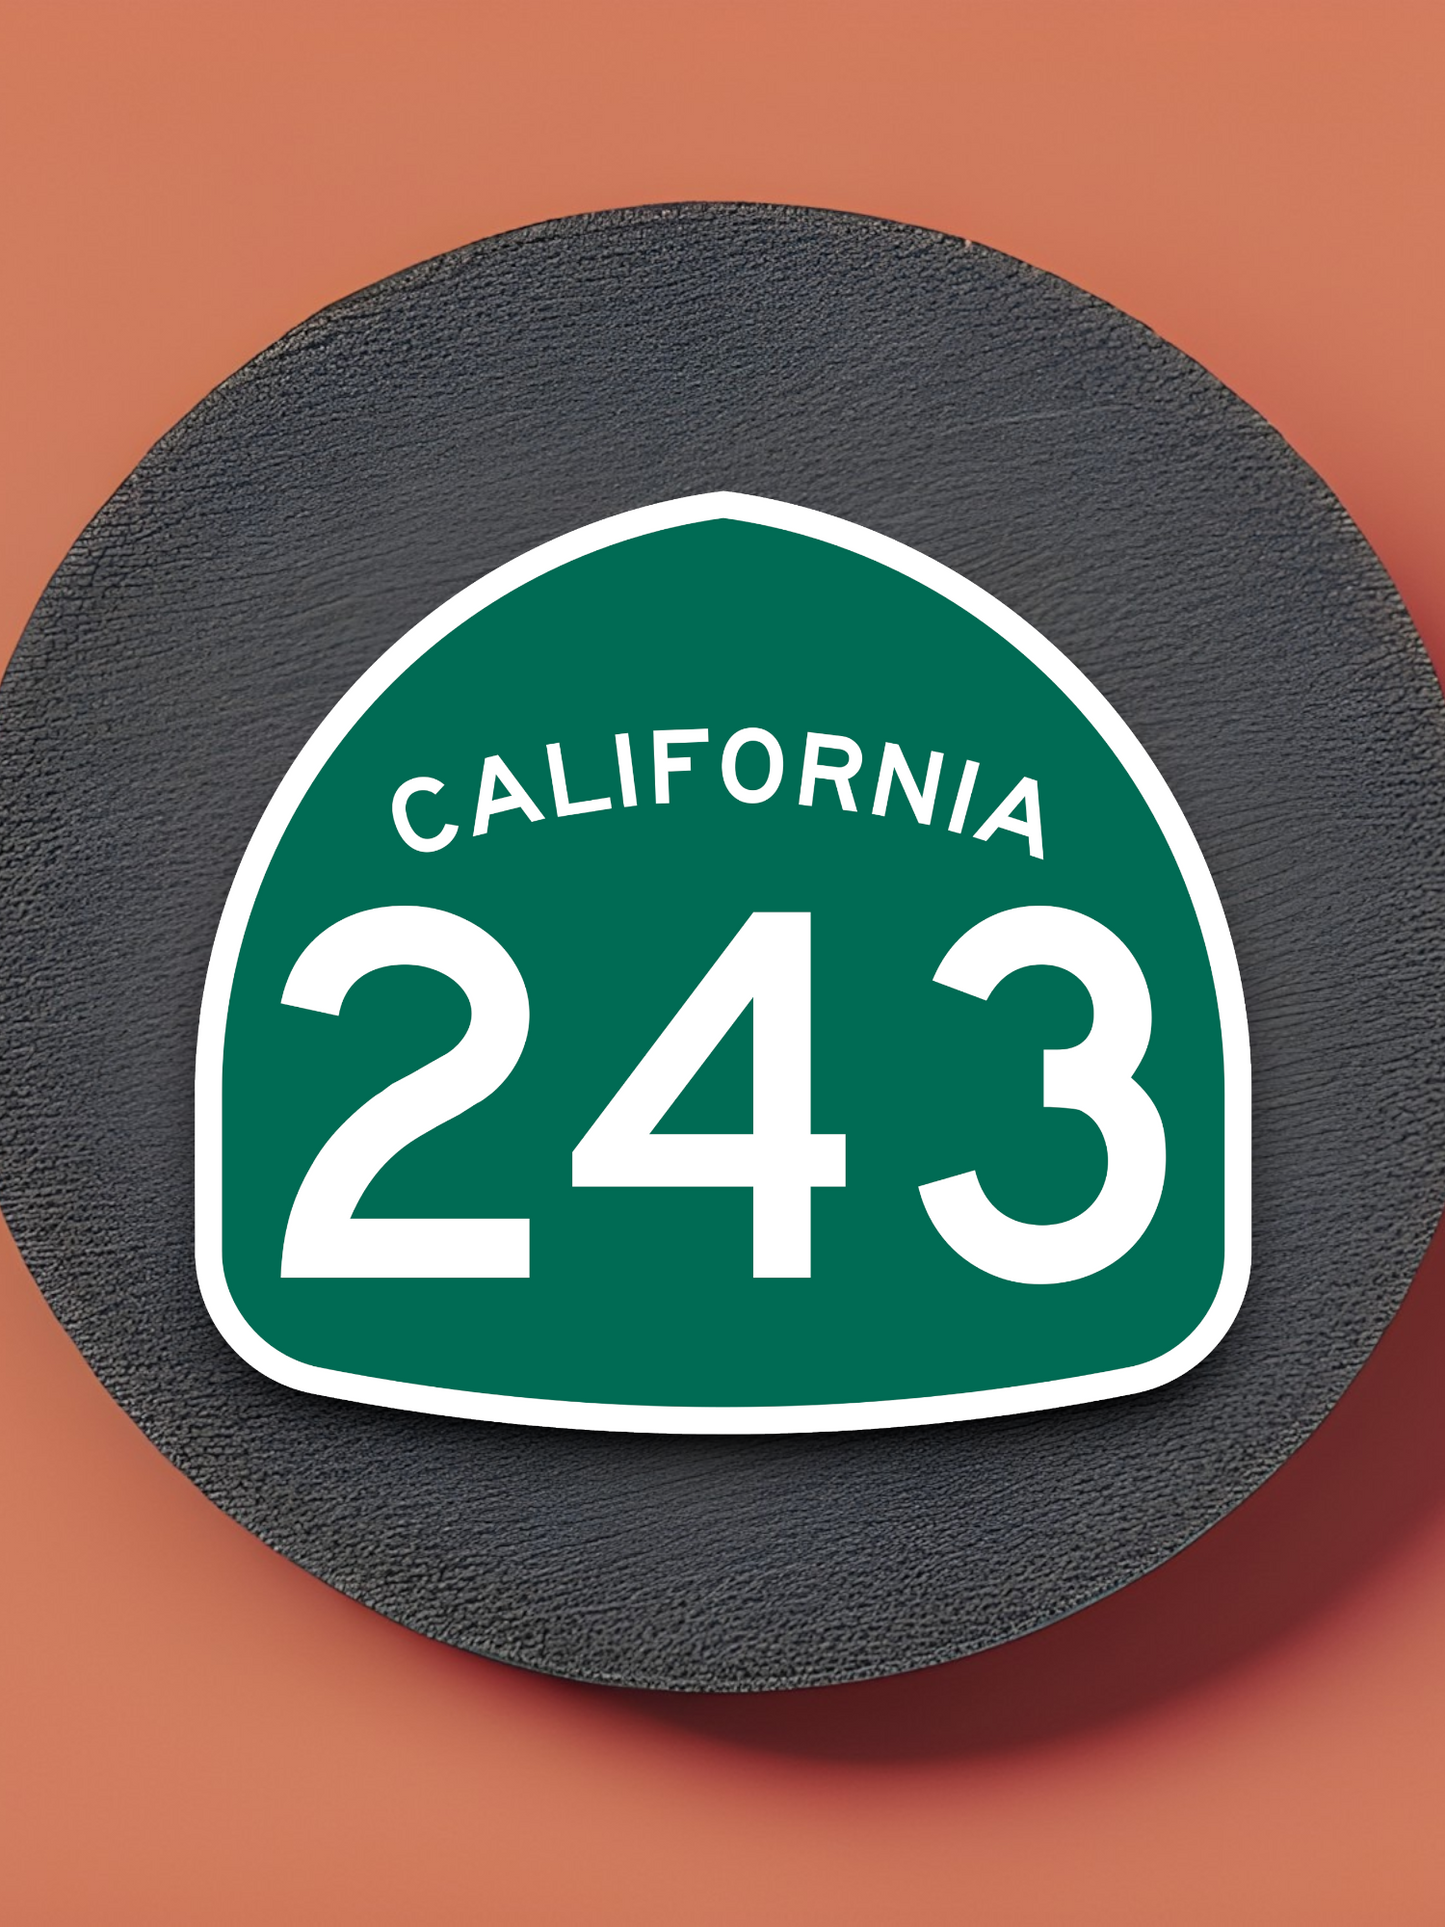 California State Route 243 Sticker